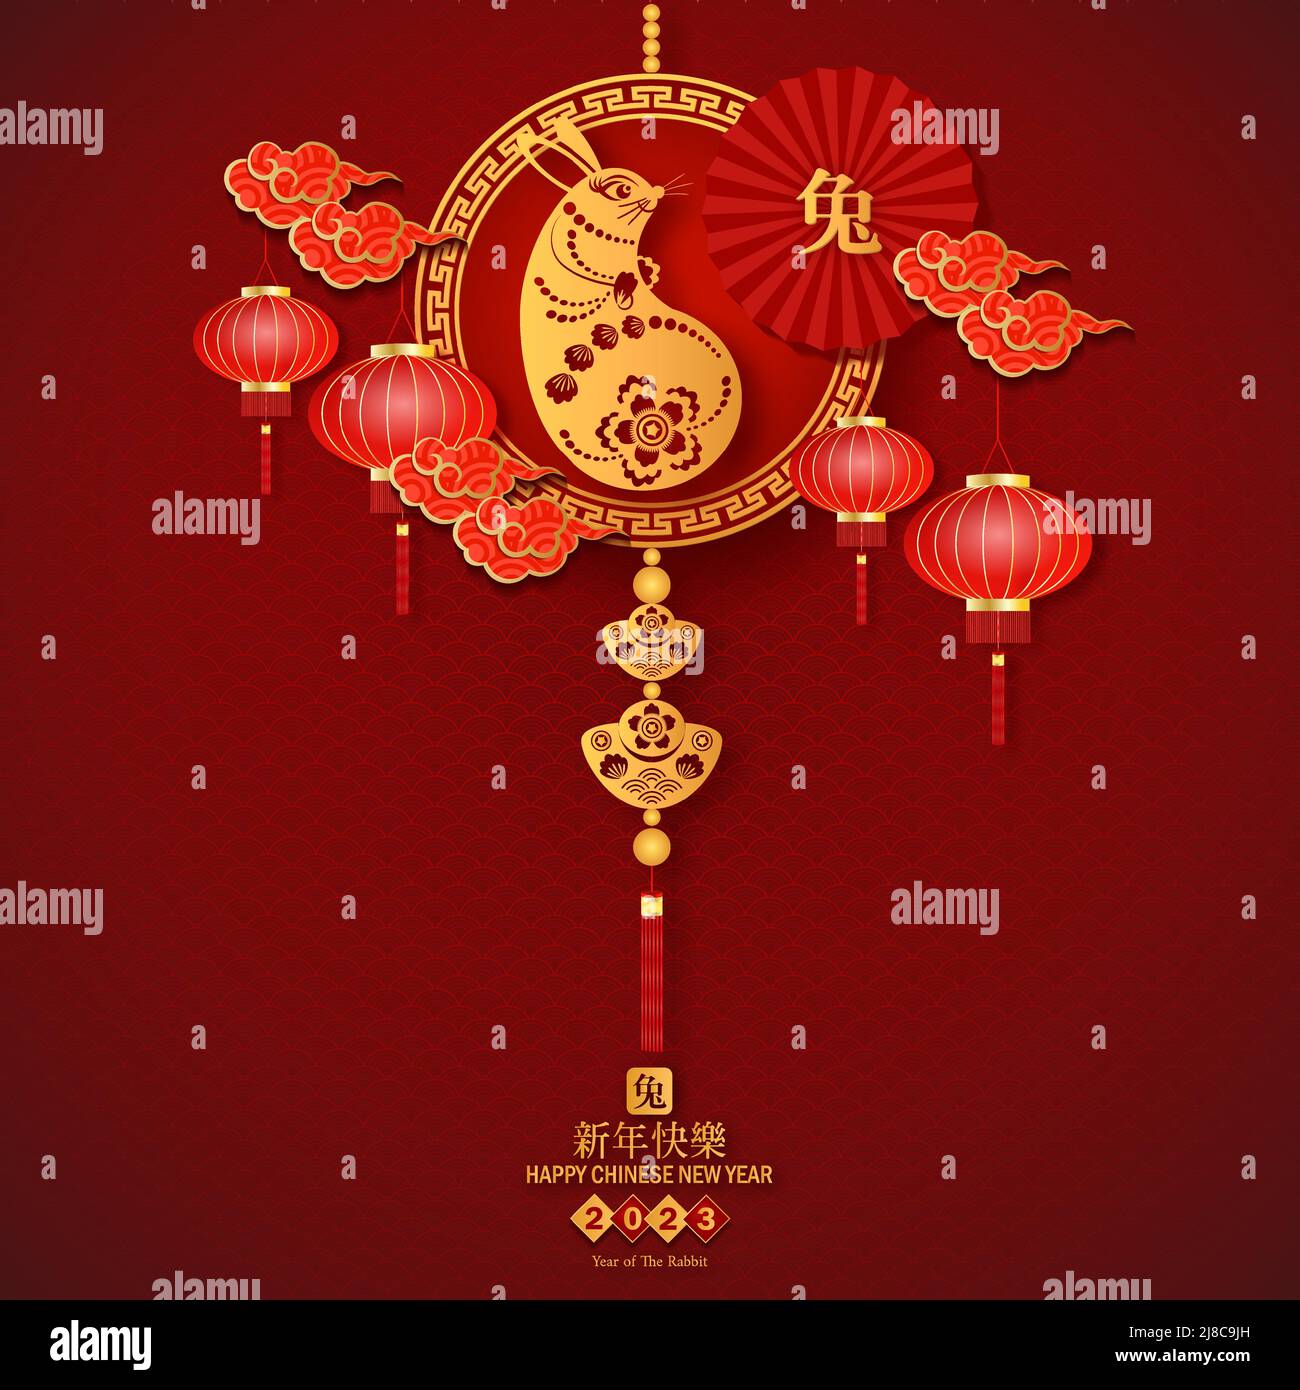 2023 lapin Simbol pour la nouvelle année Chnese. La traduction chinoise est l'année moyenne de lapin heureux chinois nouvelle année. Illustration de Vecteur